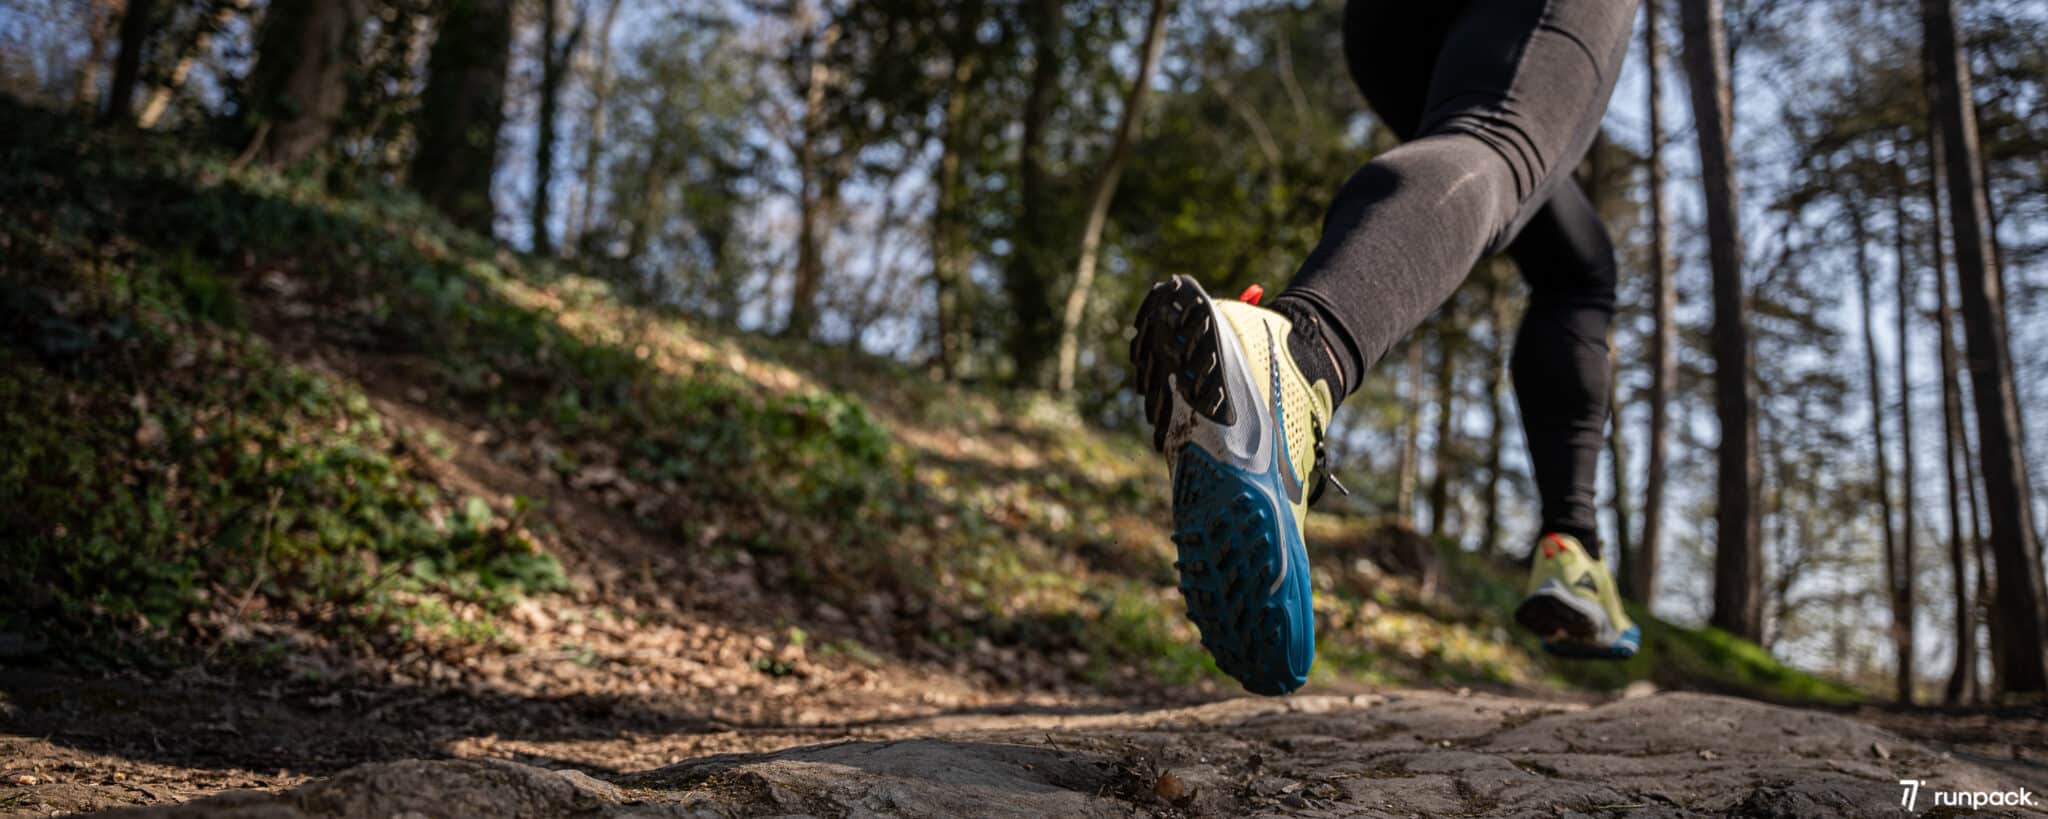 Durée de vie des chaussures de running : quand les changer ?, Blog